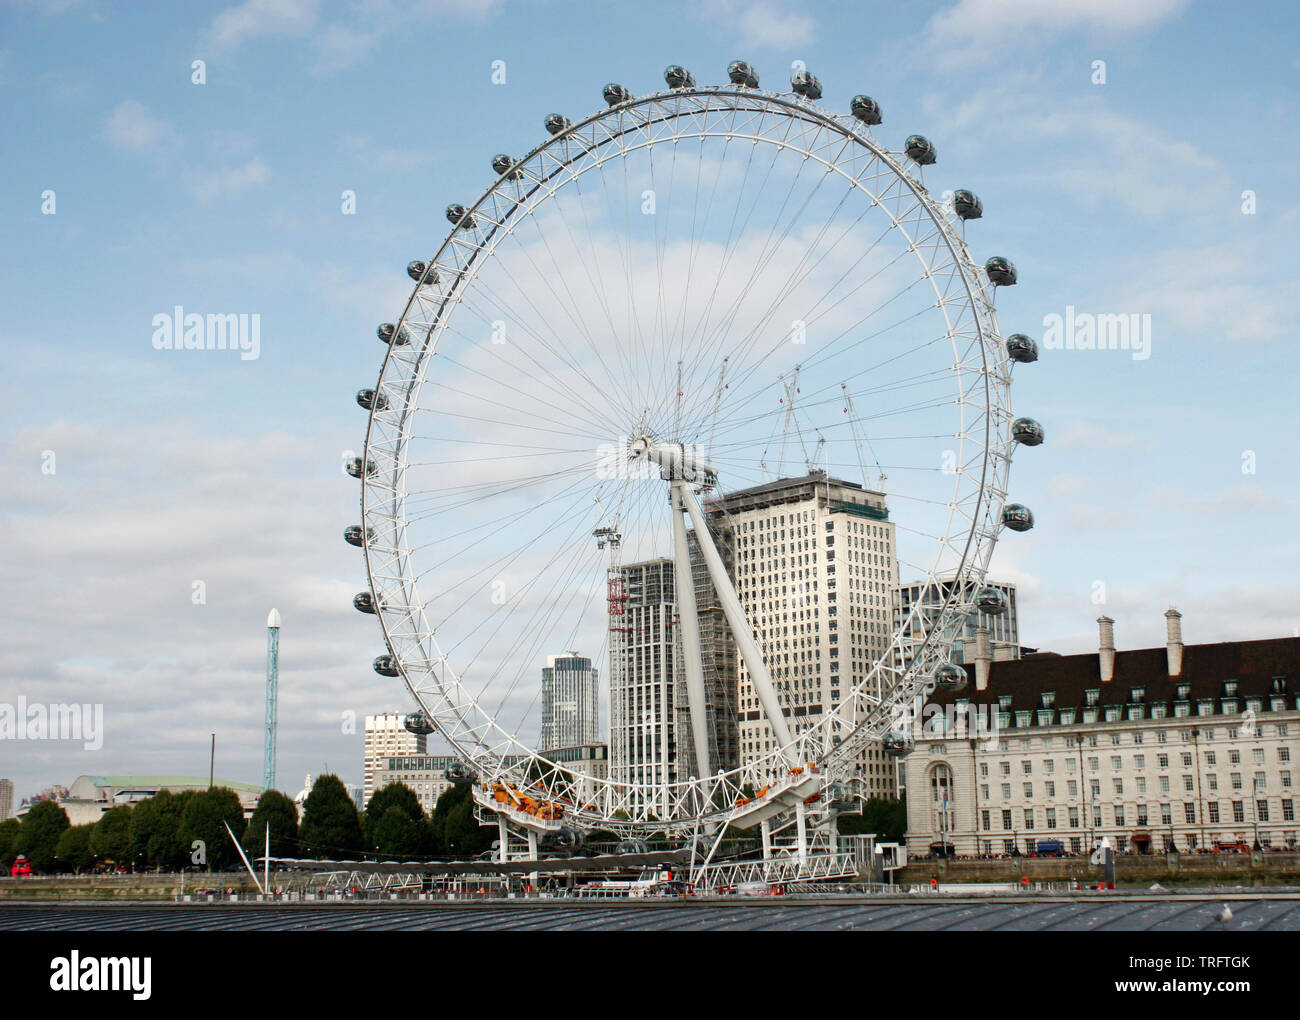 El London Eye, una noria gigante en Londres y la rueda de observación más alta voladizo Foto de stock